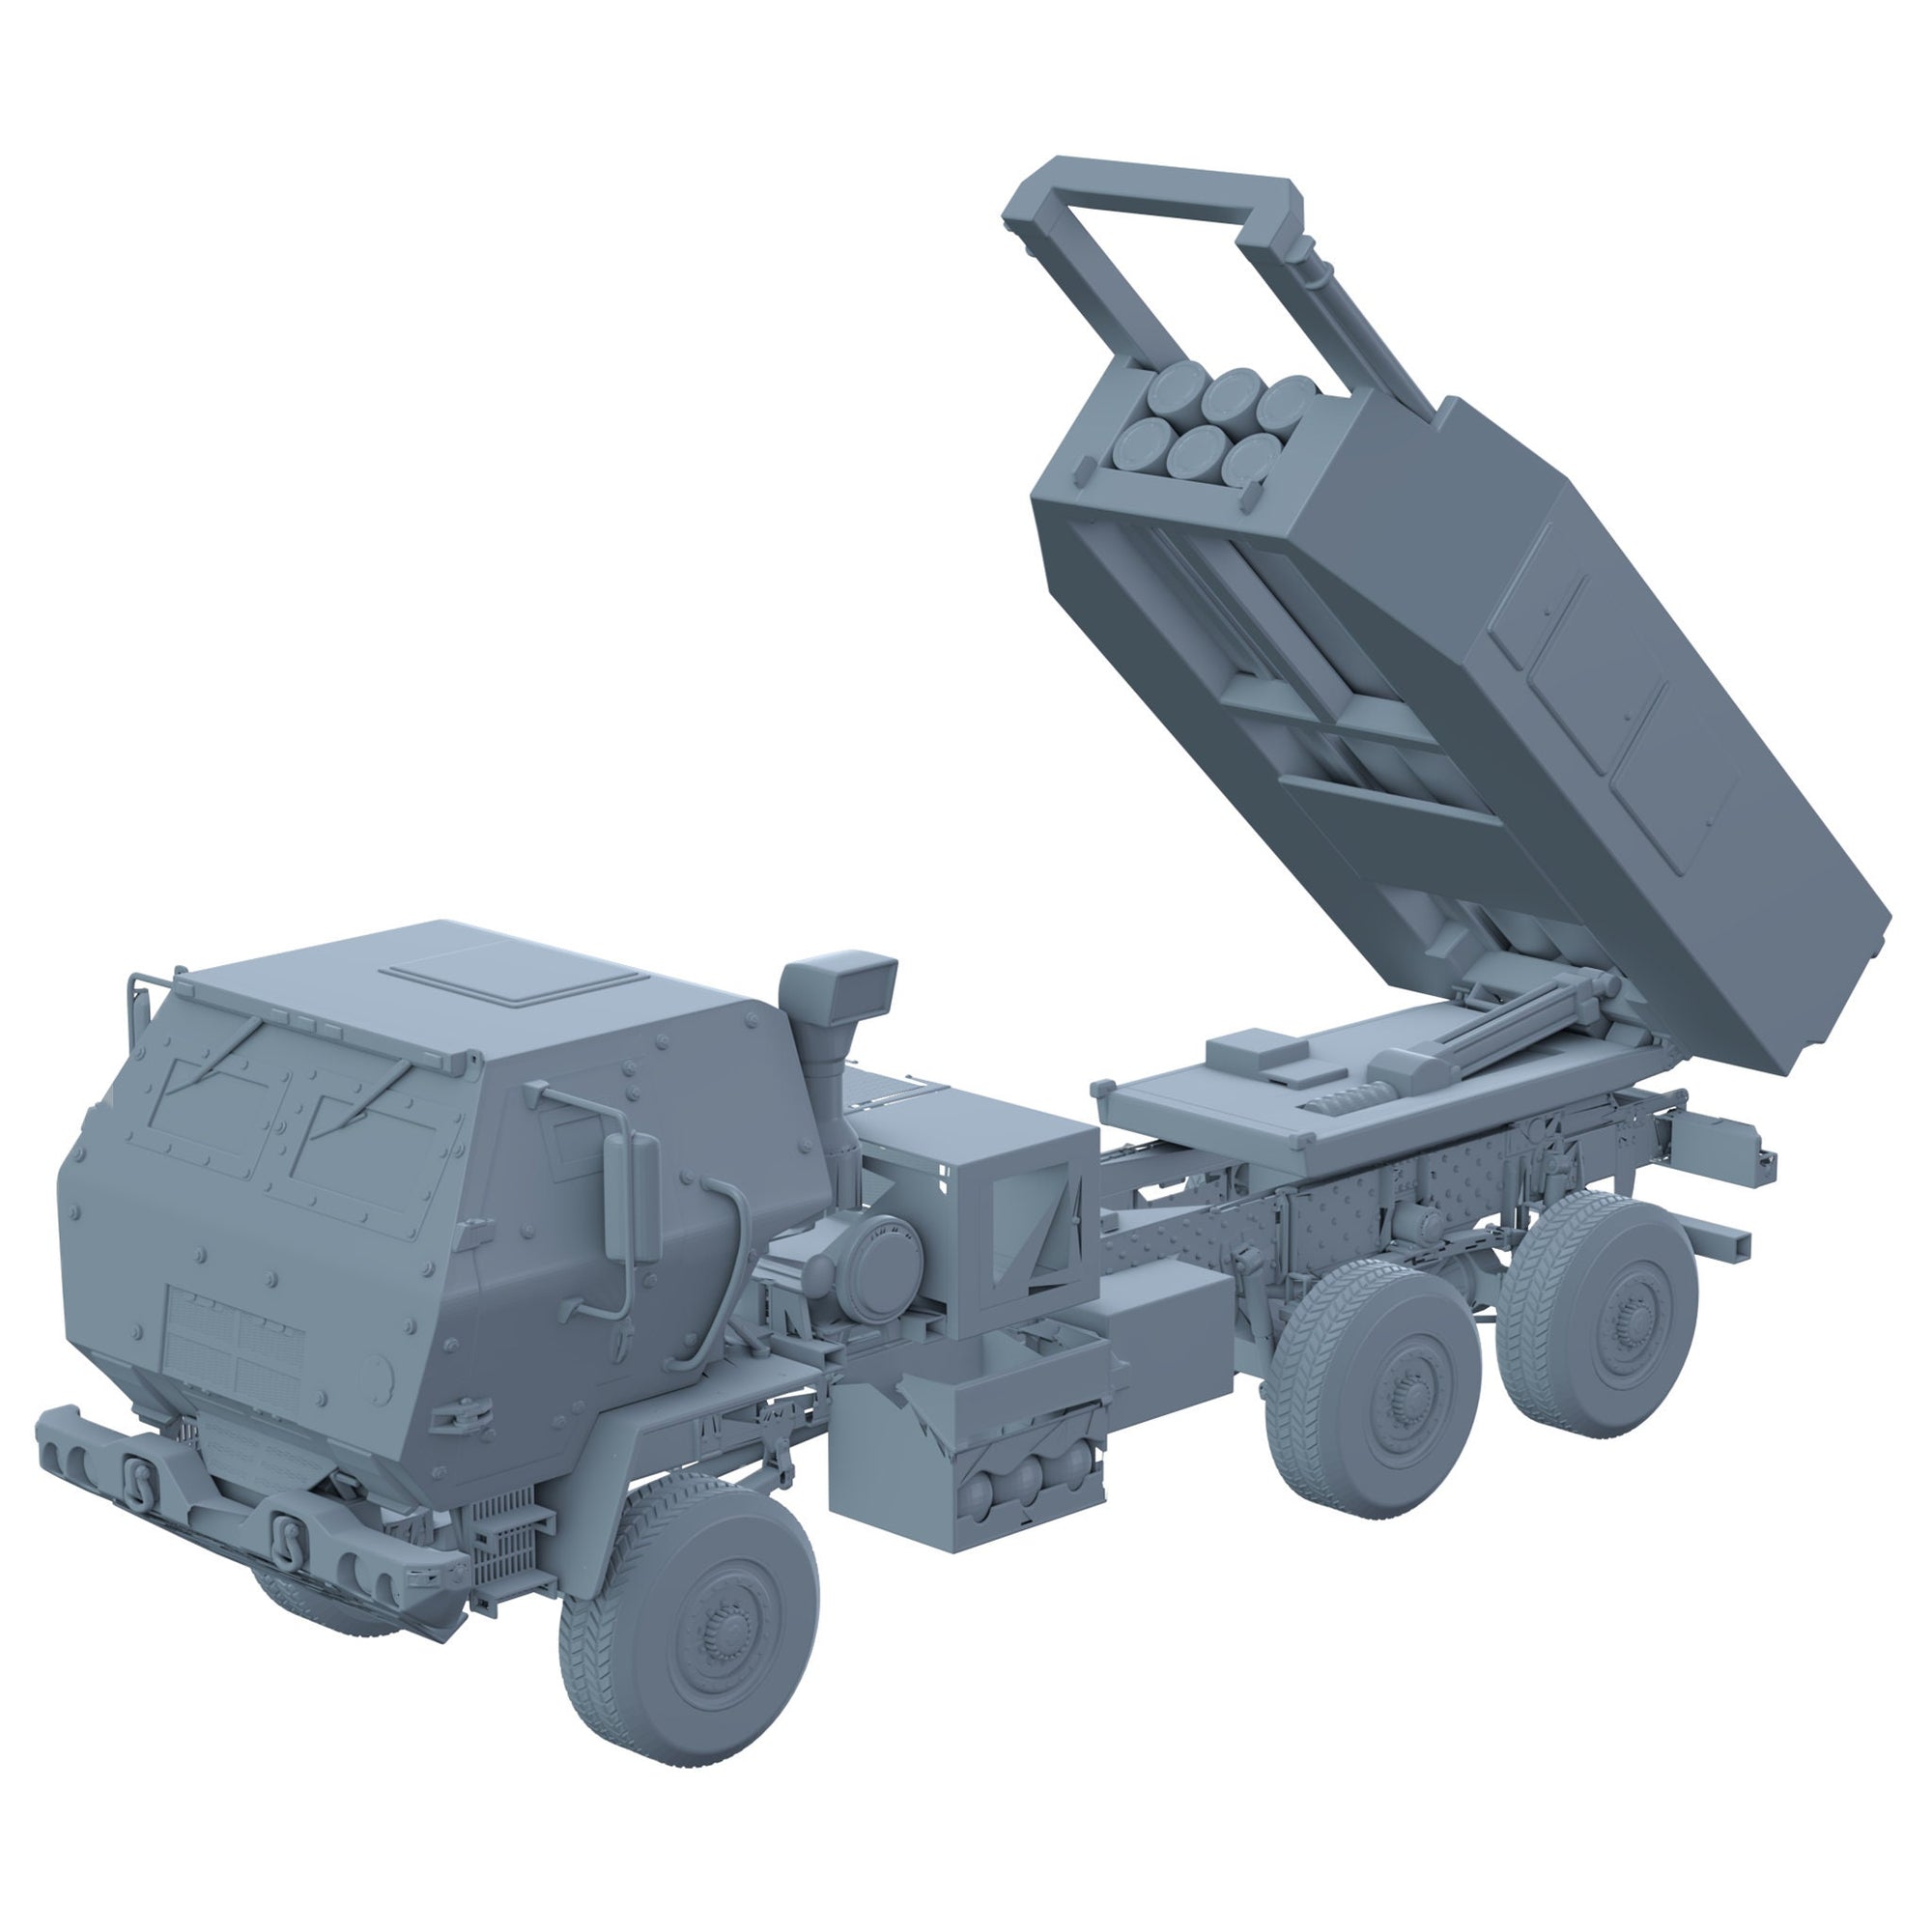 HIMARS (High Mobility Artillery Rocket System)